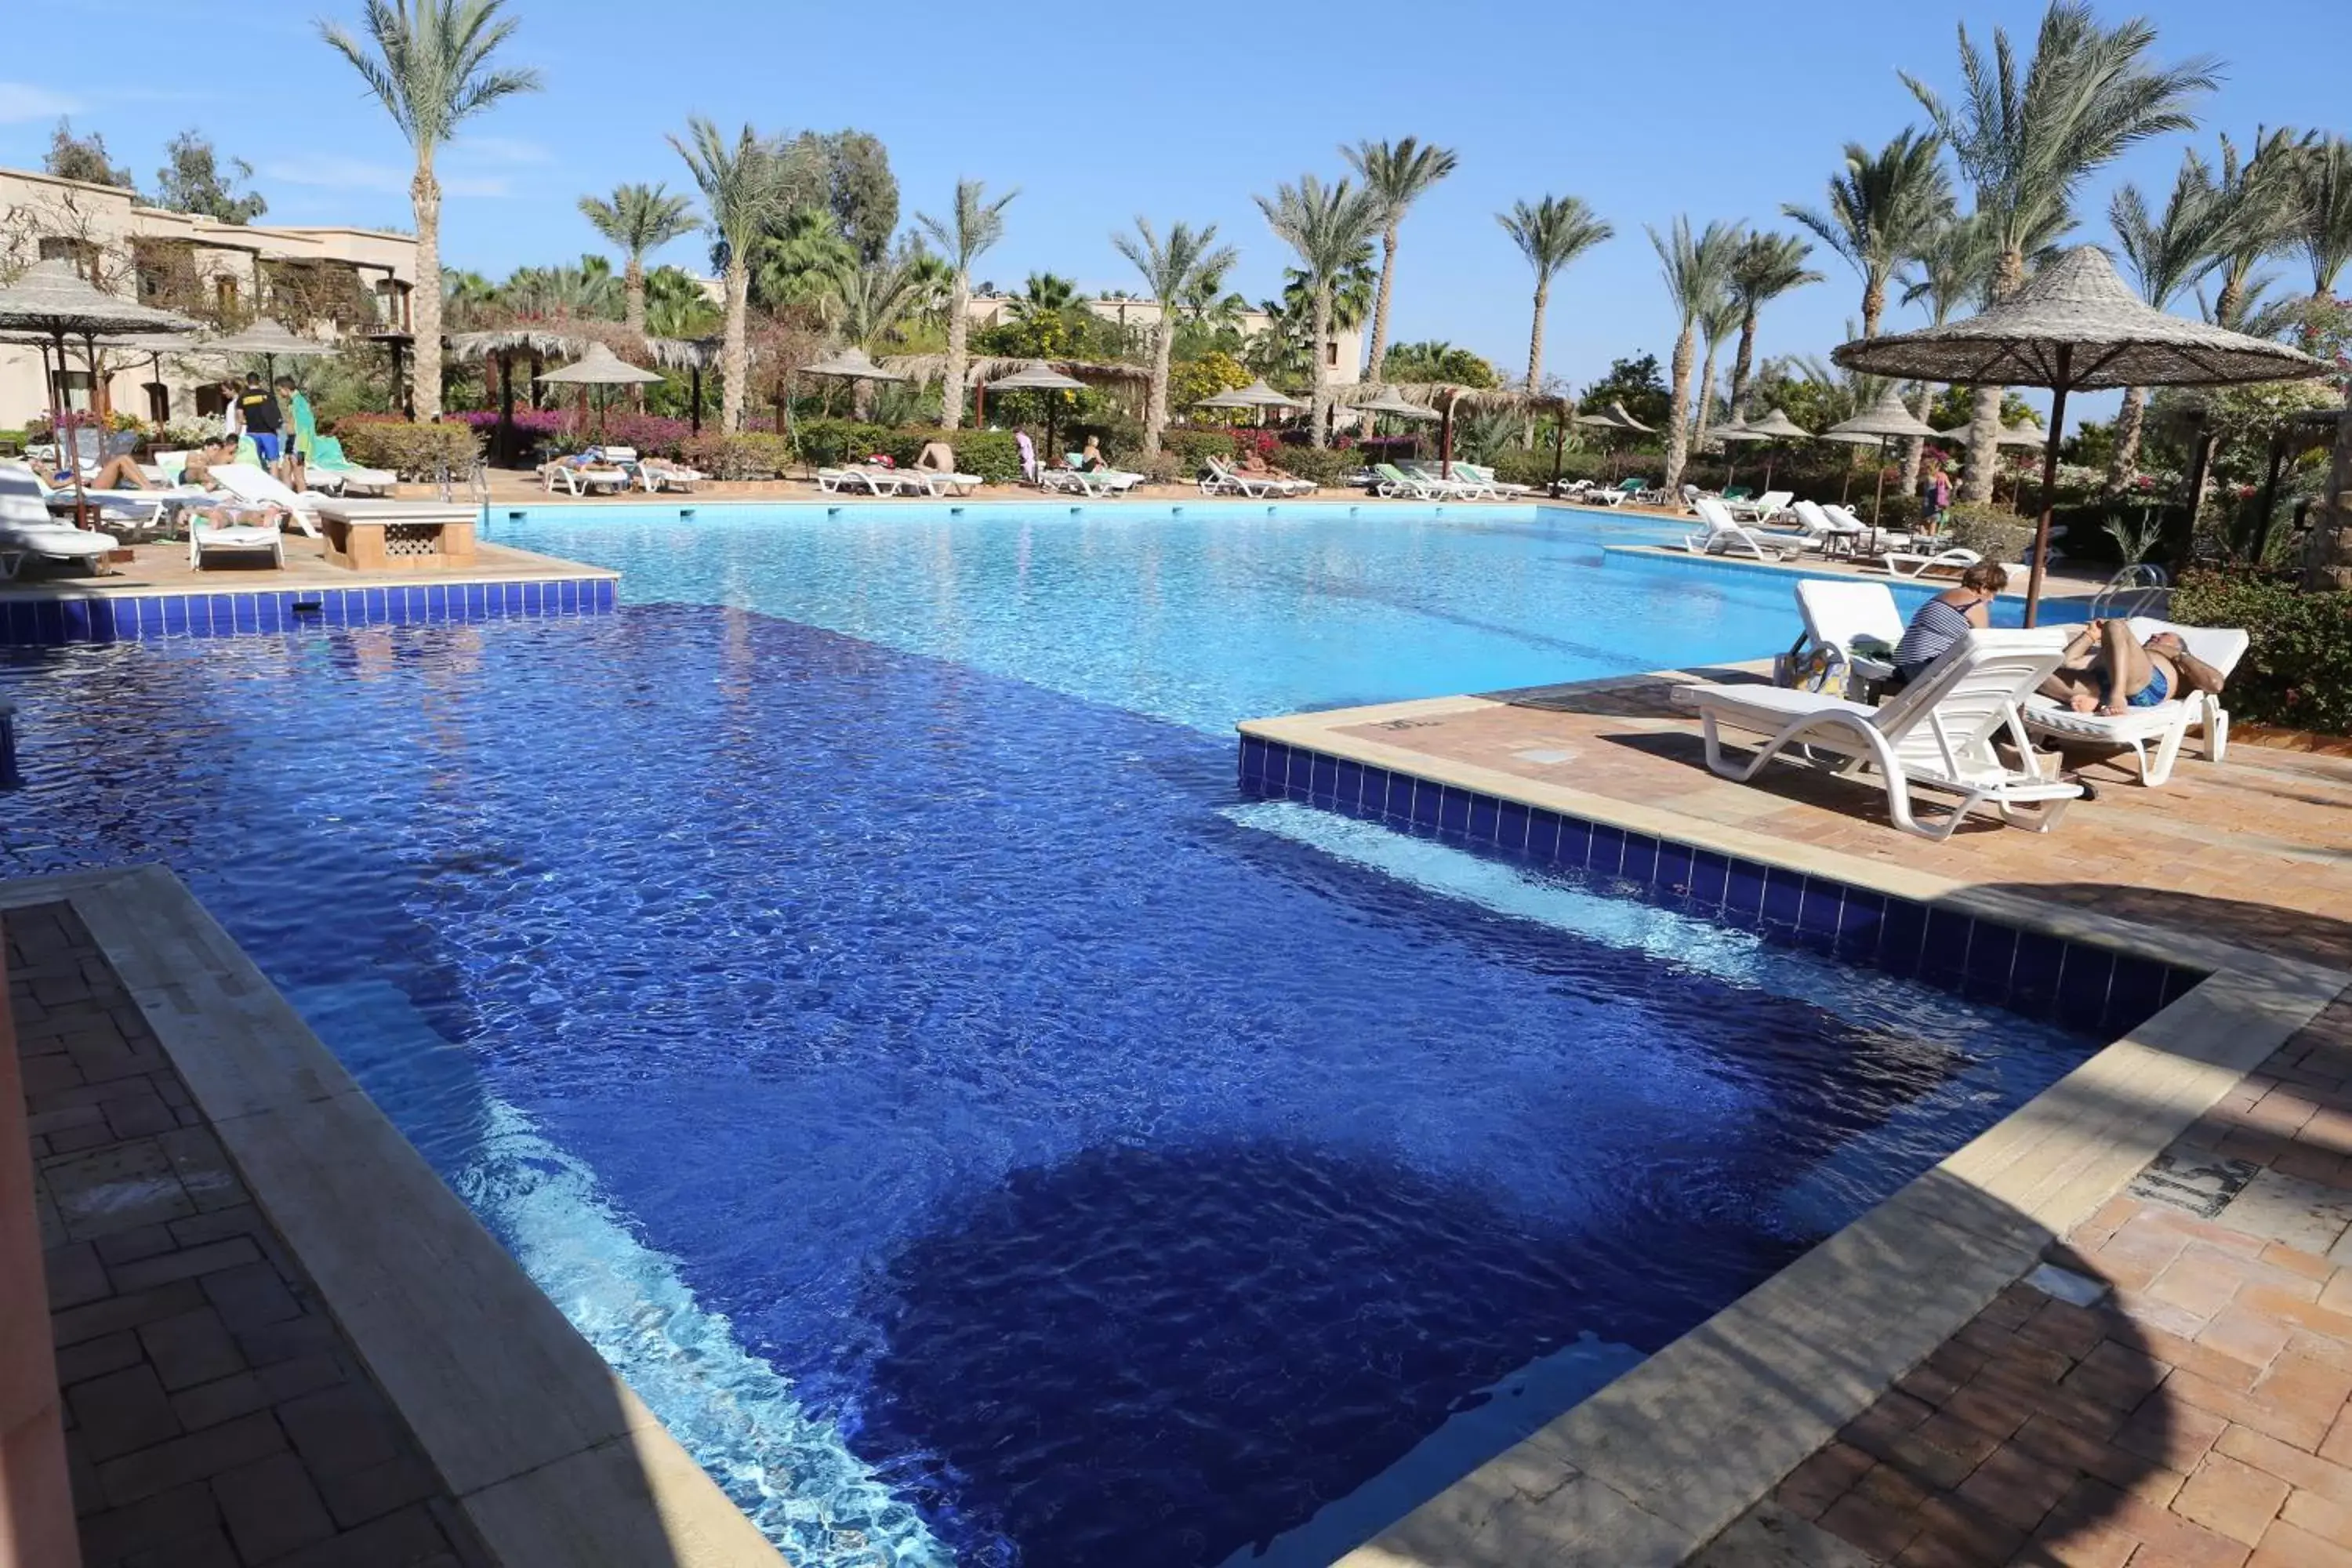 Swimming Pool in Tamra Beach Resort